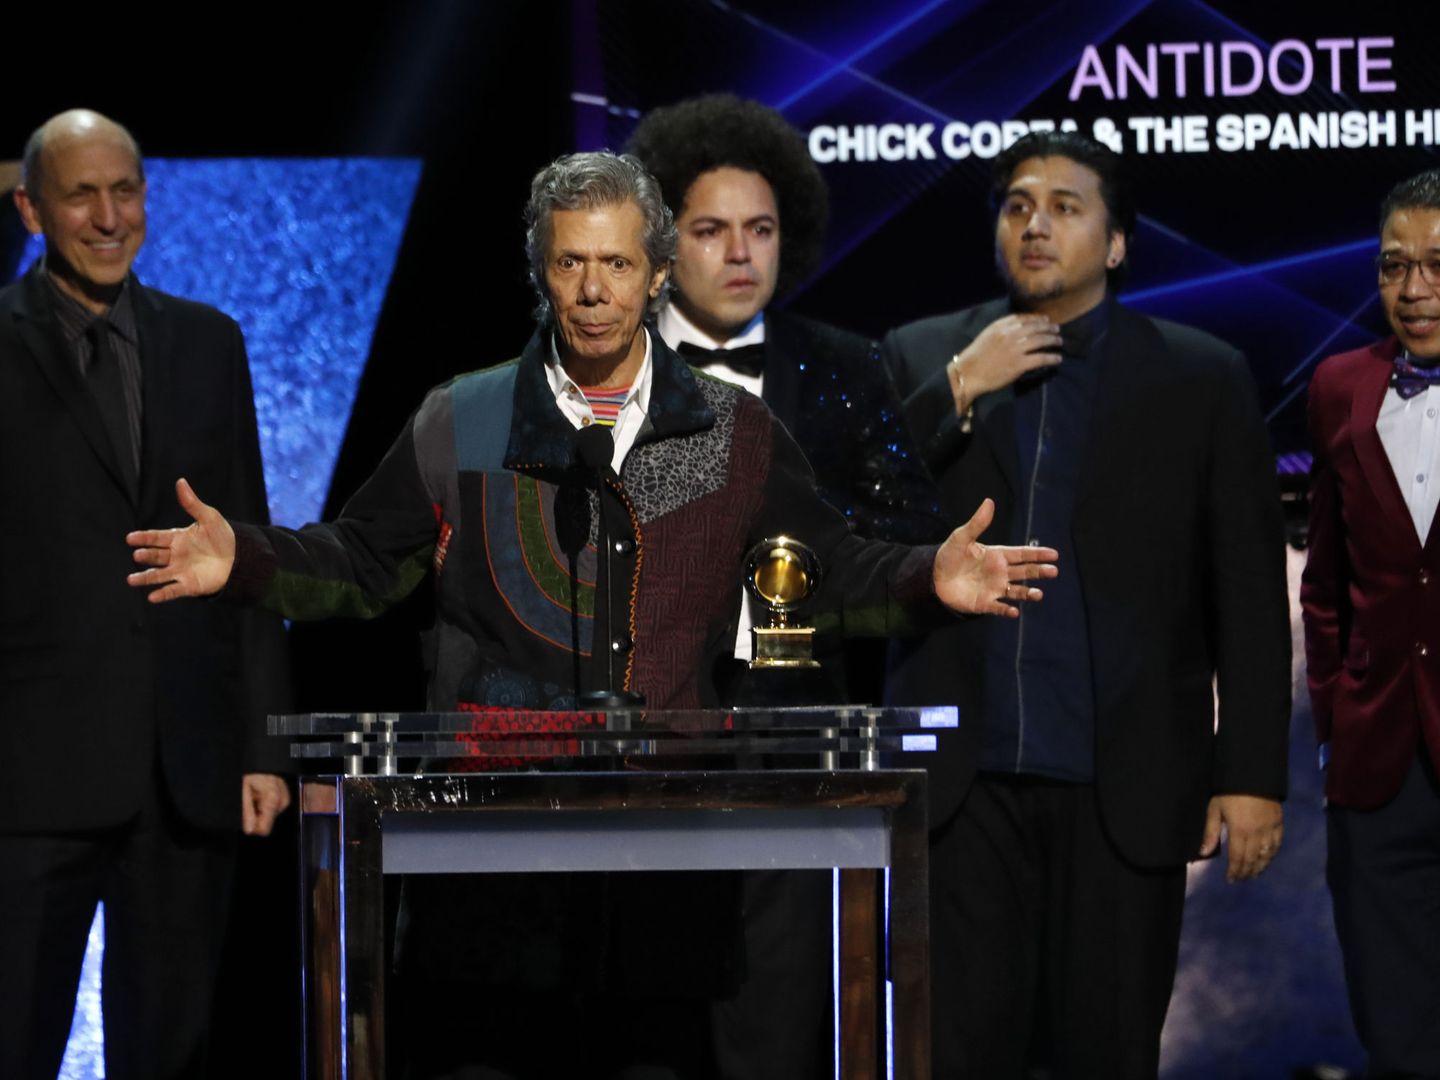 Chick Corea y The Spanish Heart Band recogen el premio al mejor álbum de jazz latino por 'Antidote'. (Reuters)